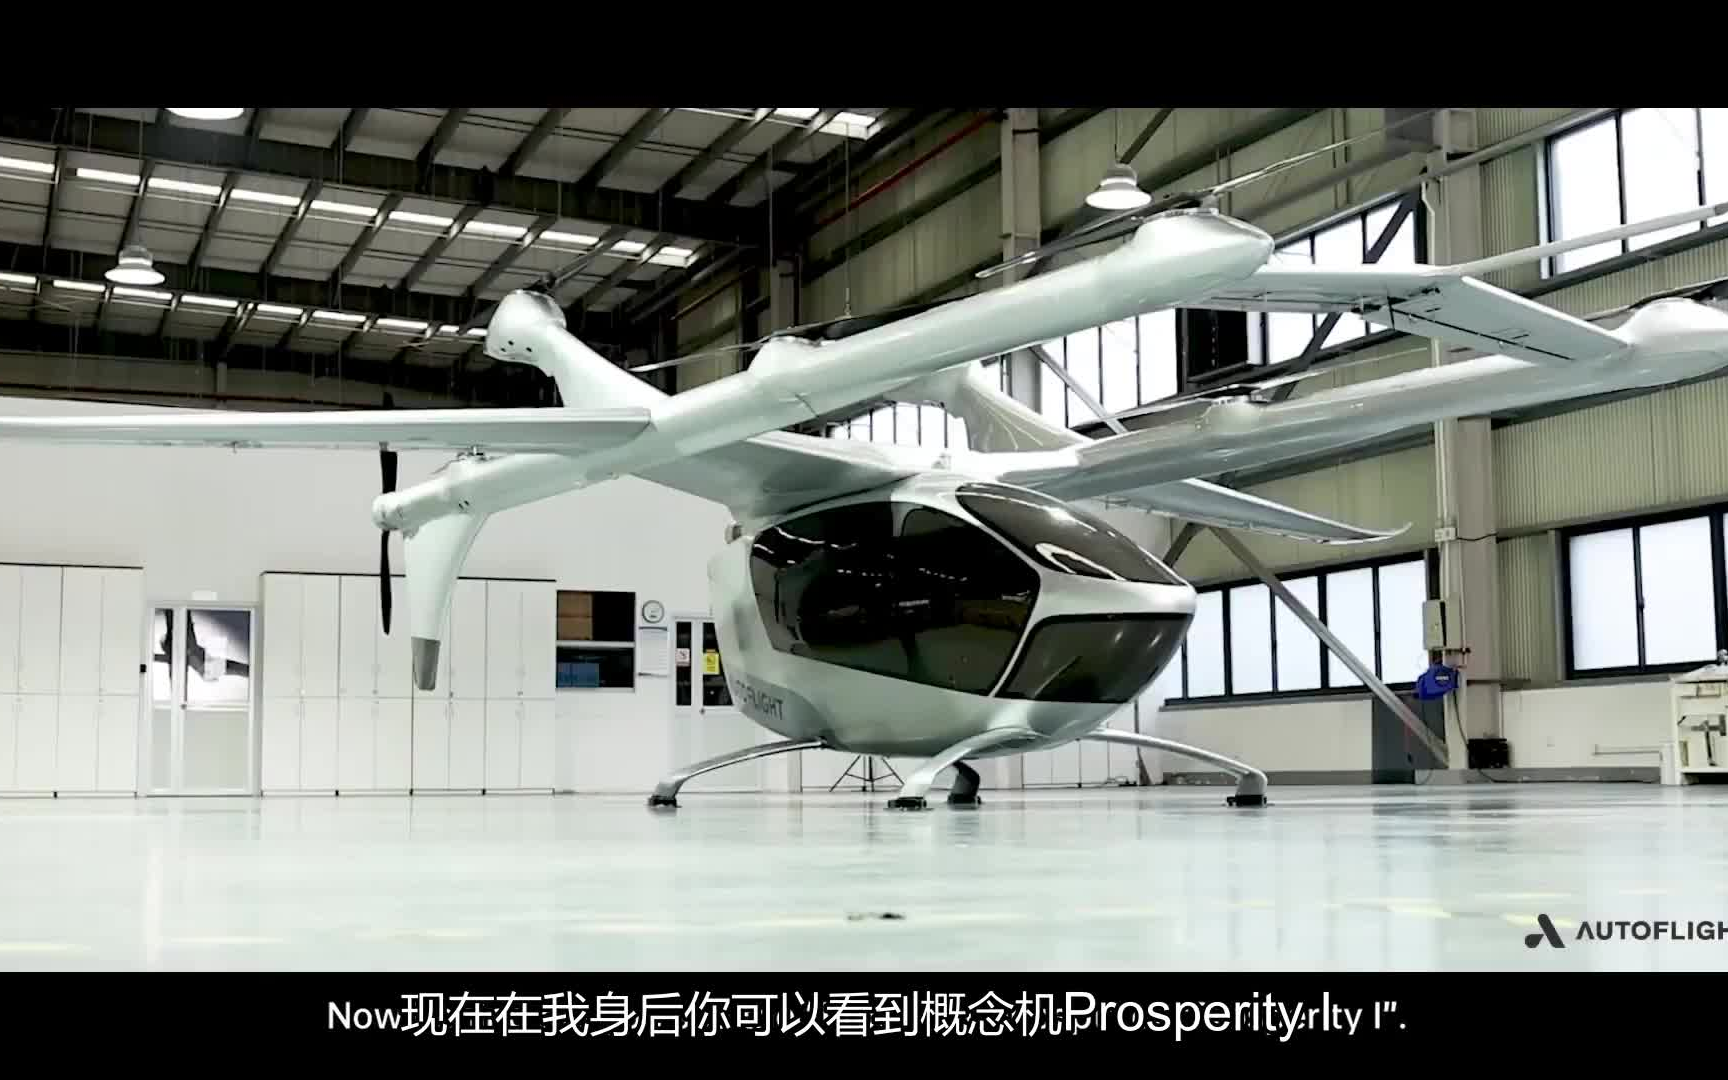 AutoFlight（峰飞航空）CEO田瑜先生介绍其载人eVTOL飞行器Prosperity I